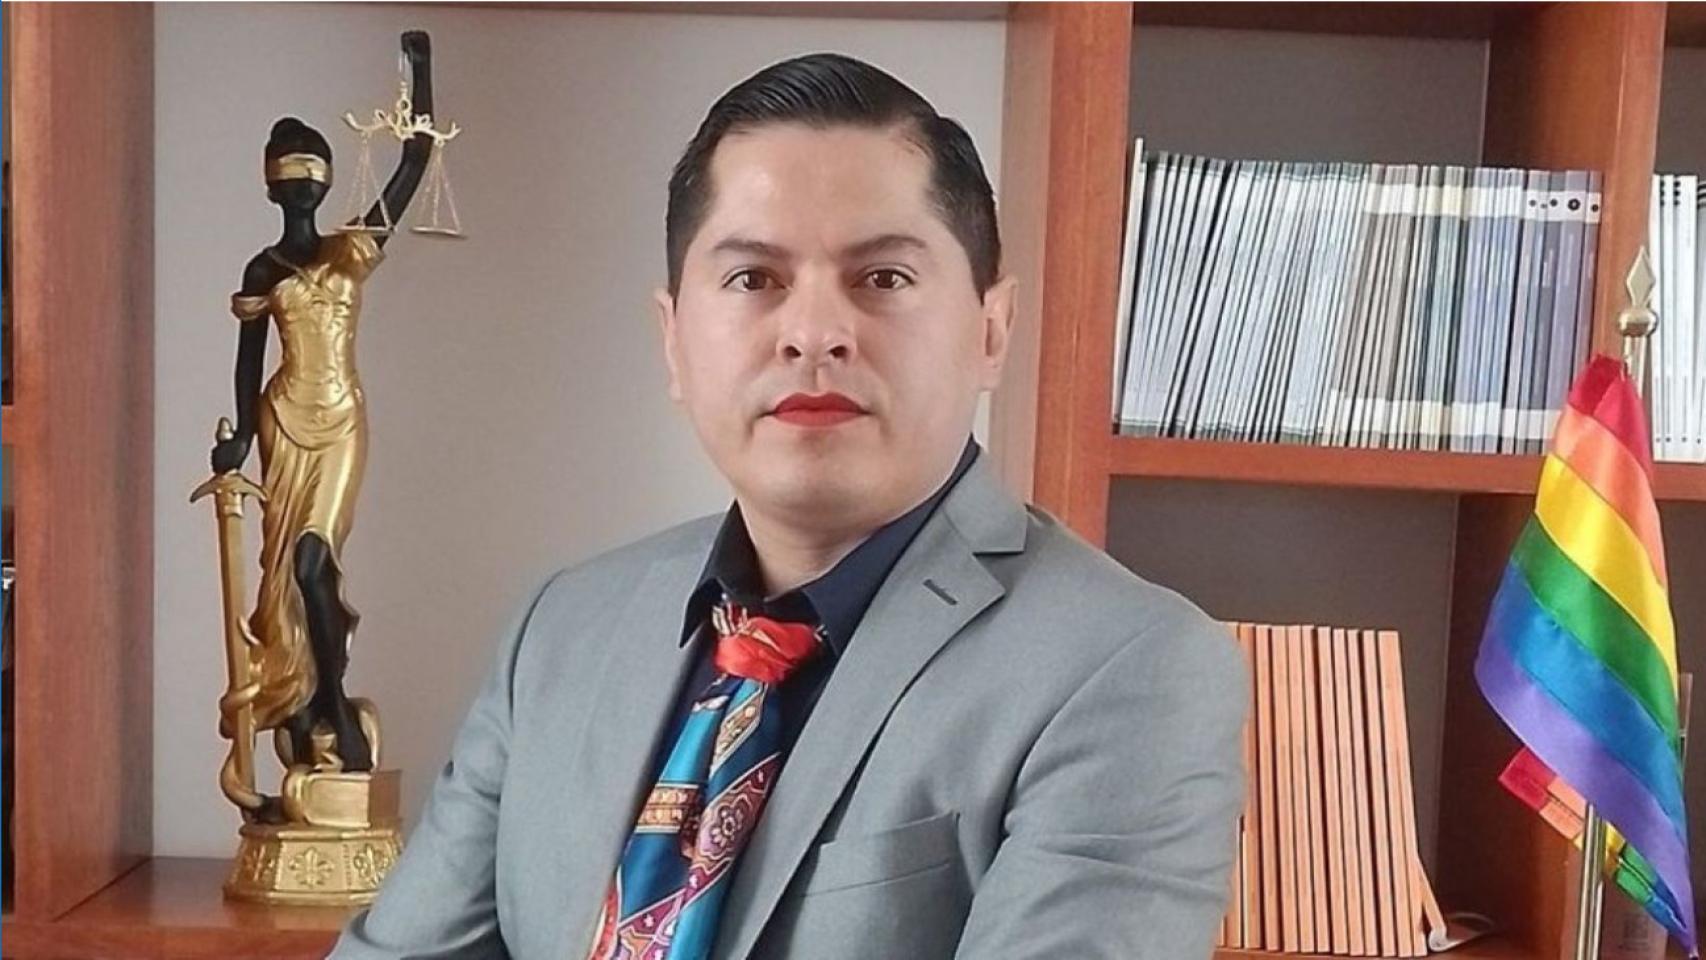 Ociel Baena, la primera persona no binaria magistrada en México y Latinoamérica.